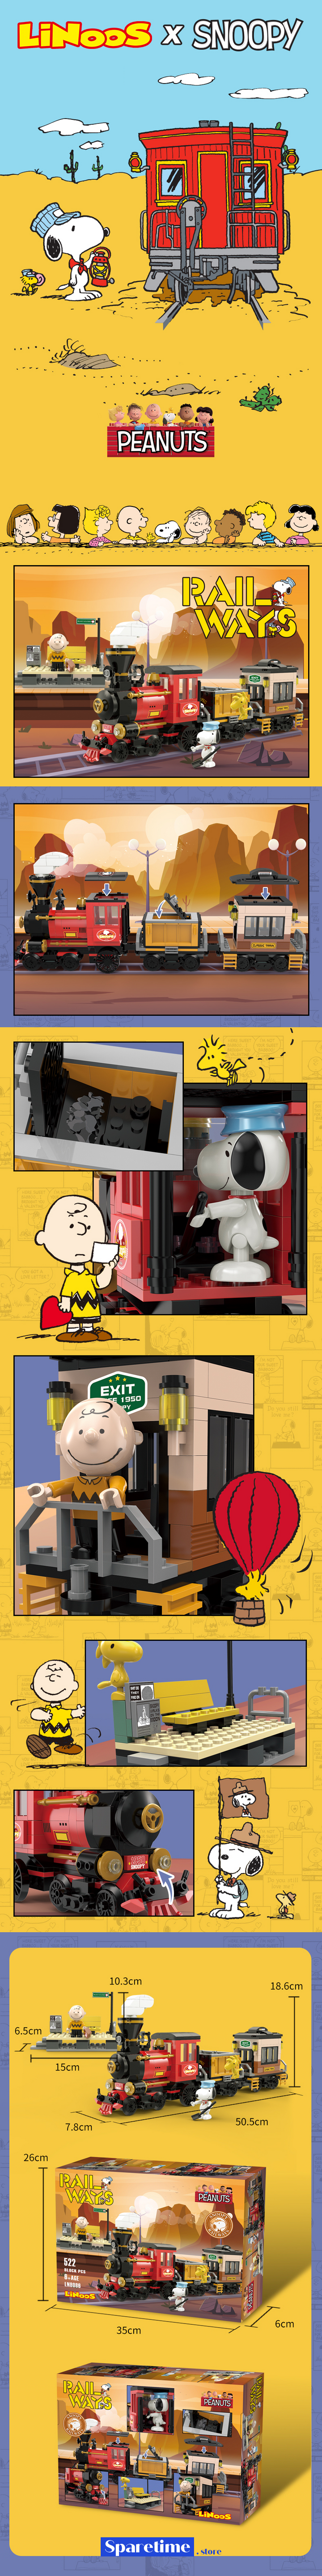 Peanuts Snoopy Train